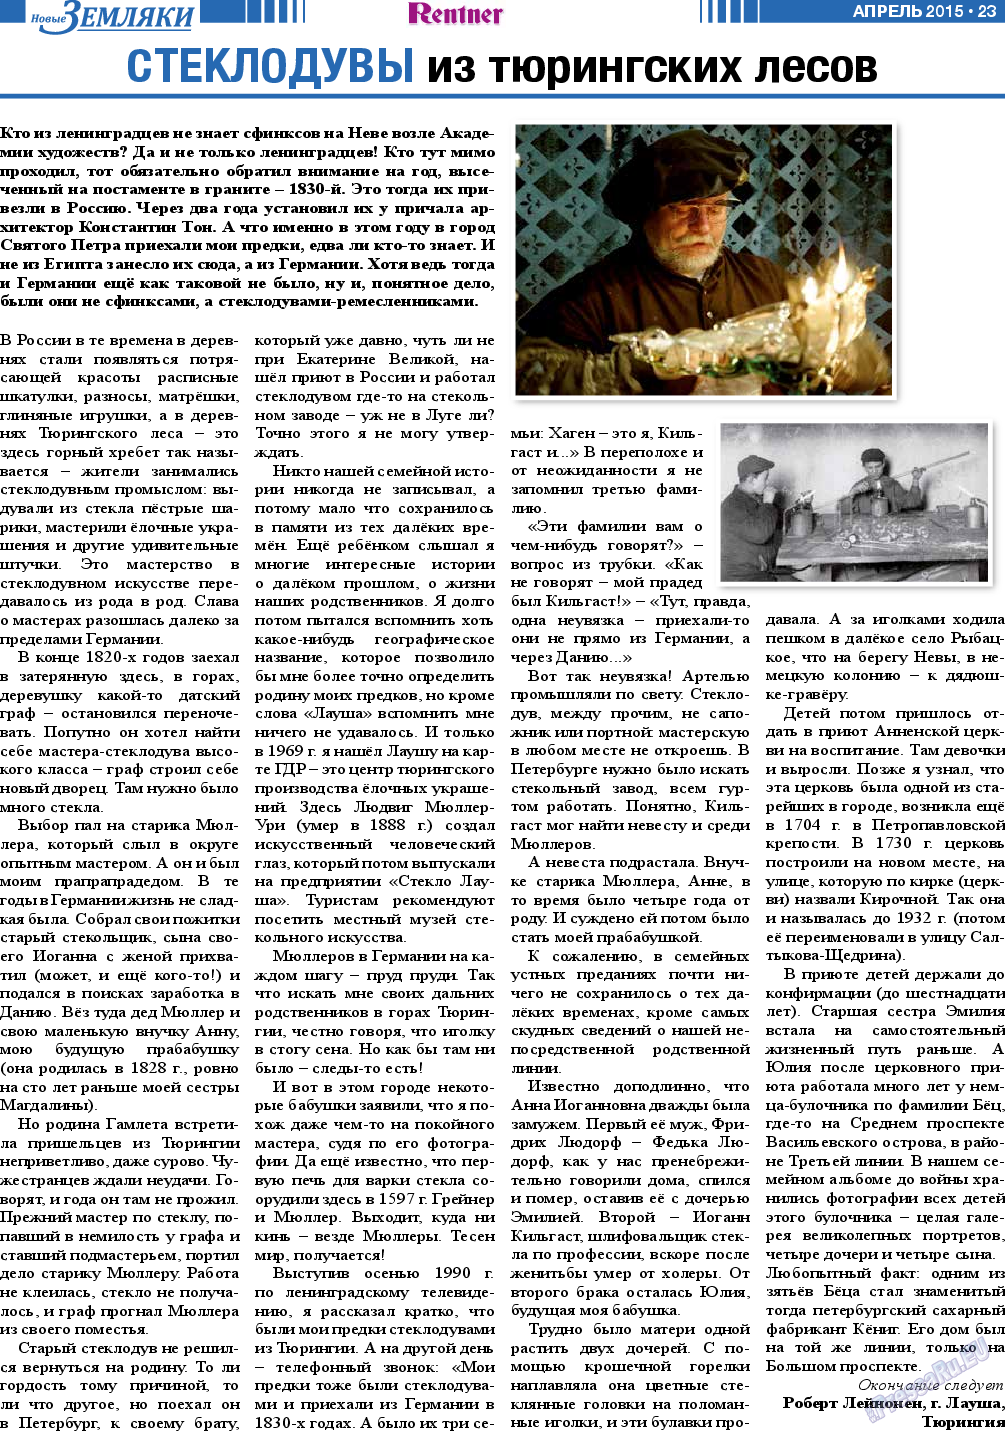 Новые Земляки, газета. 2015 №4 стр.23